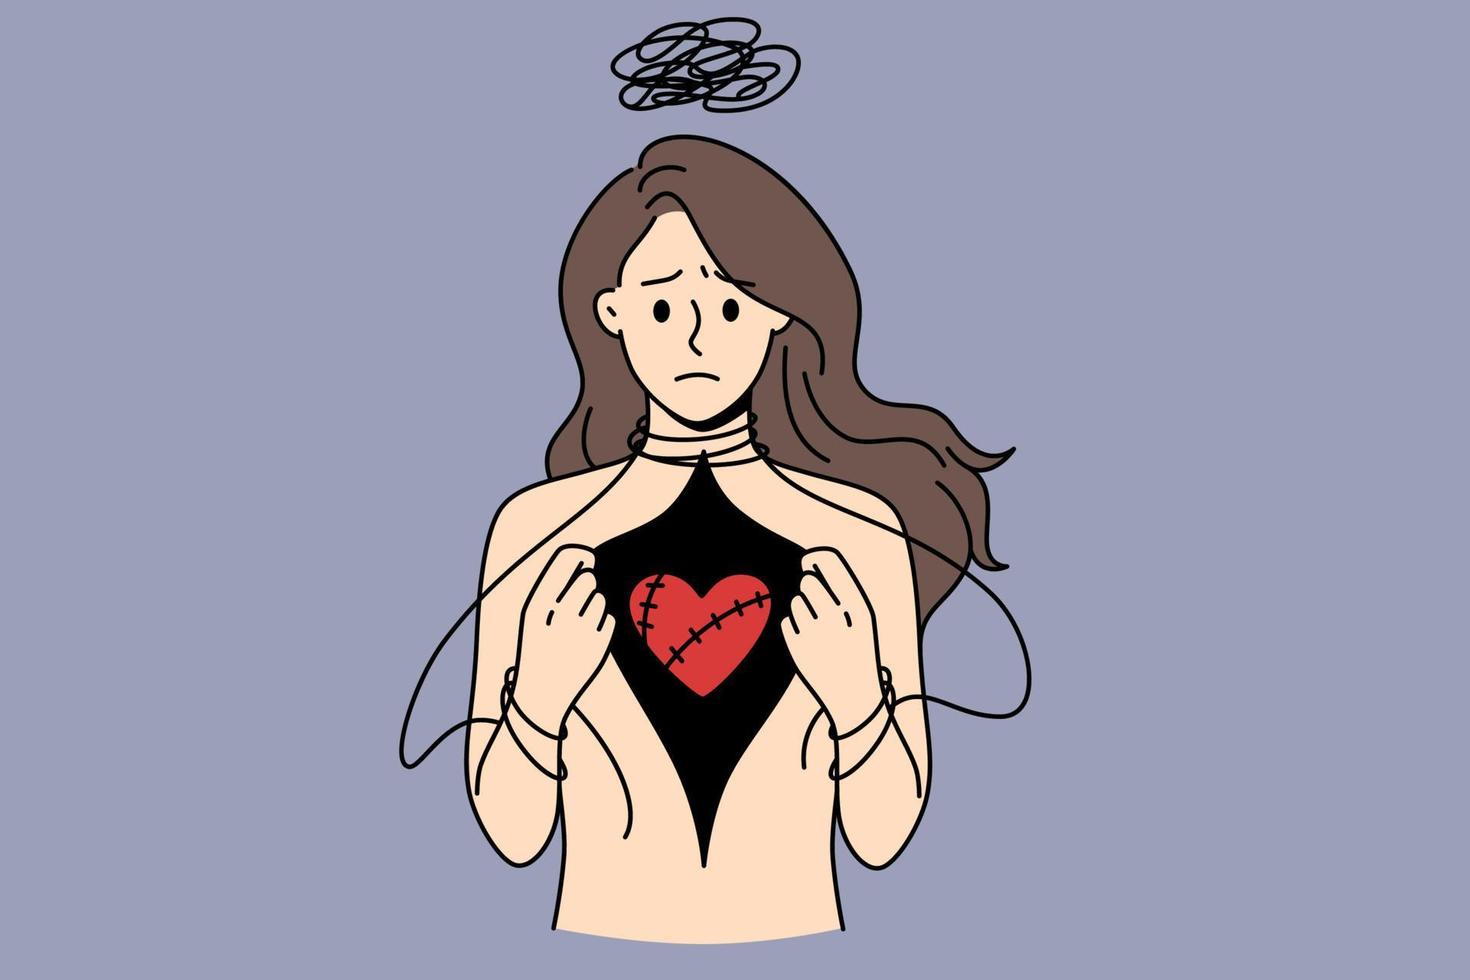 depression och kärlek ont begrepp. betonade deprimerad kvinna stående och som visar henne röd skadade hjärta i bröst vektor illustration